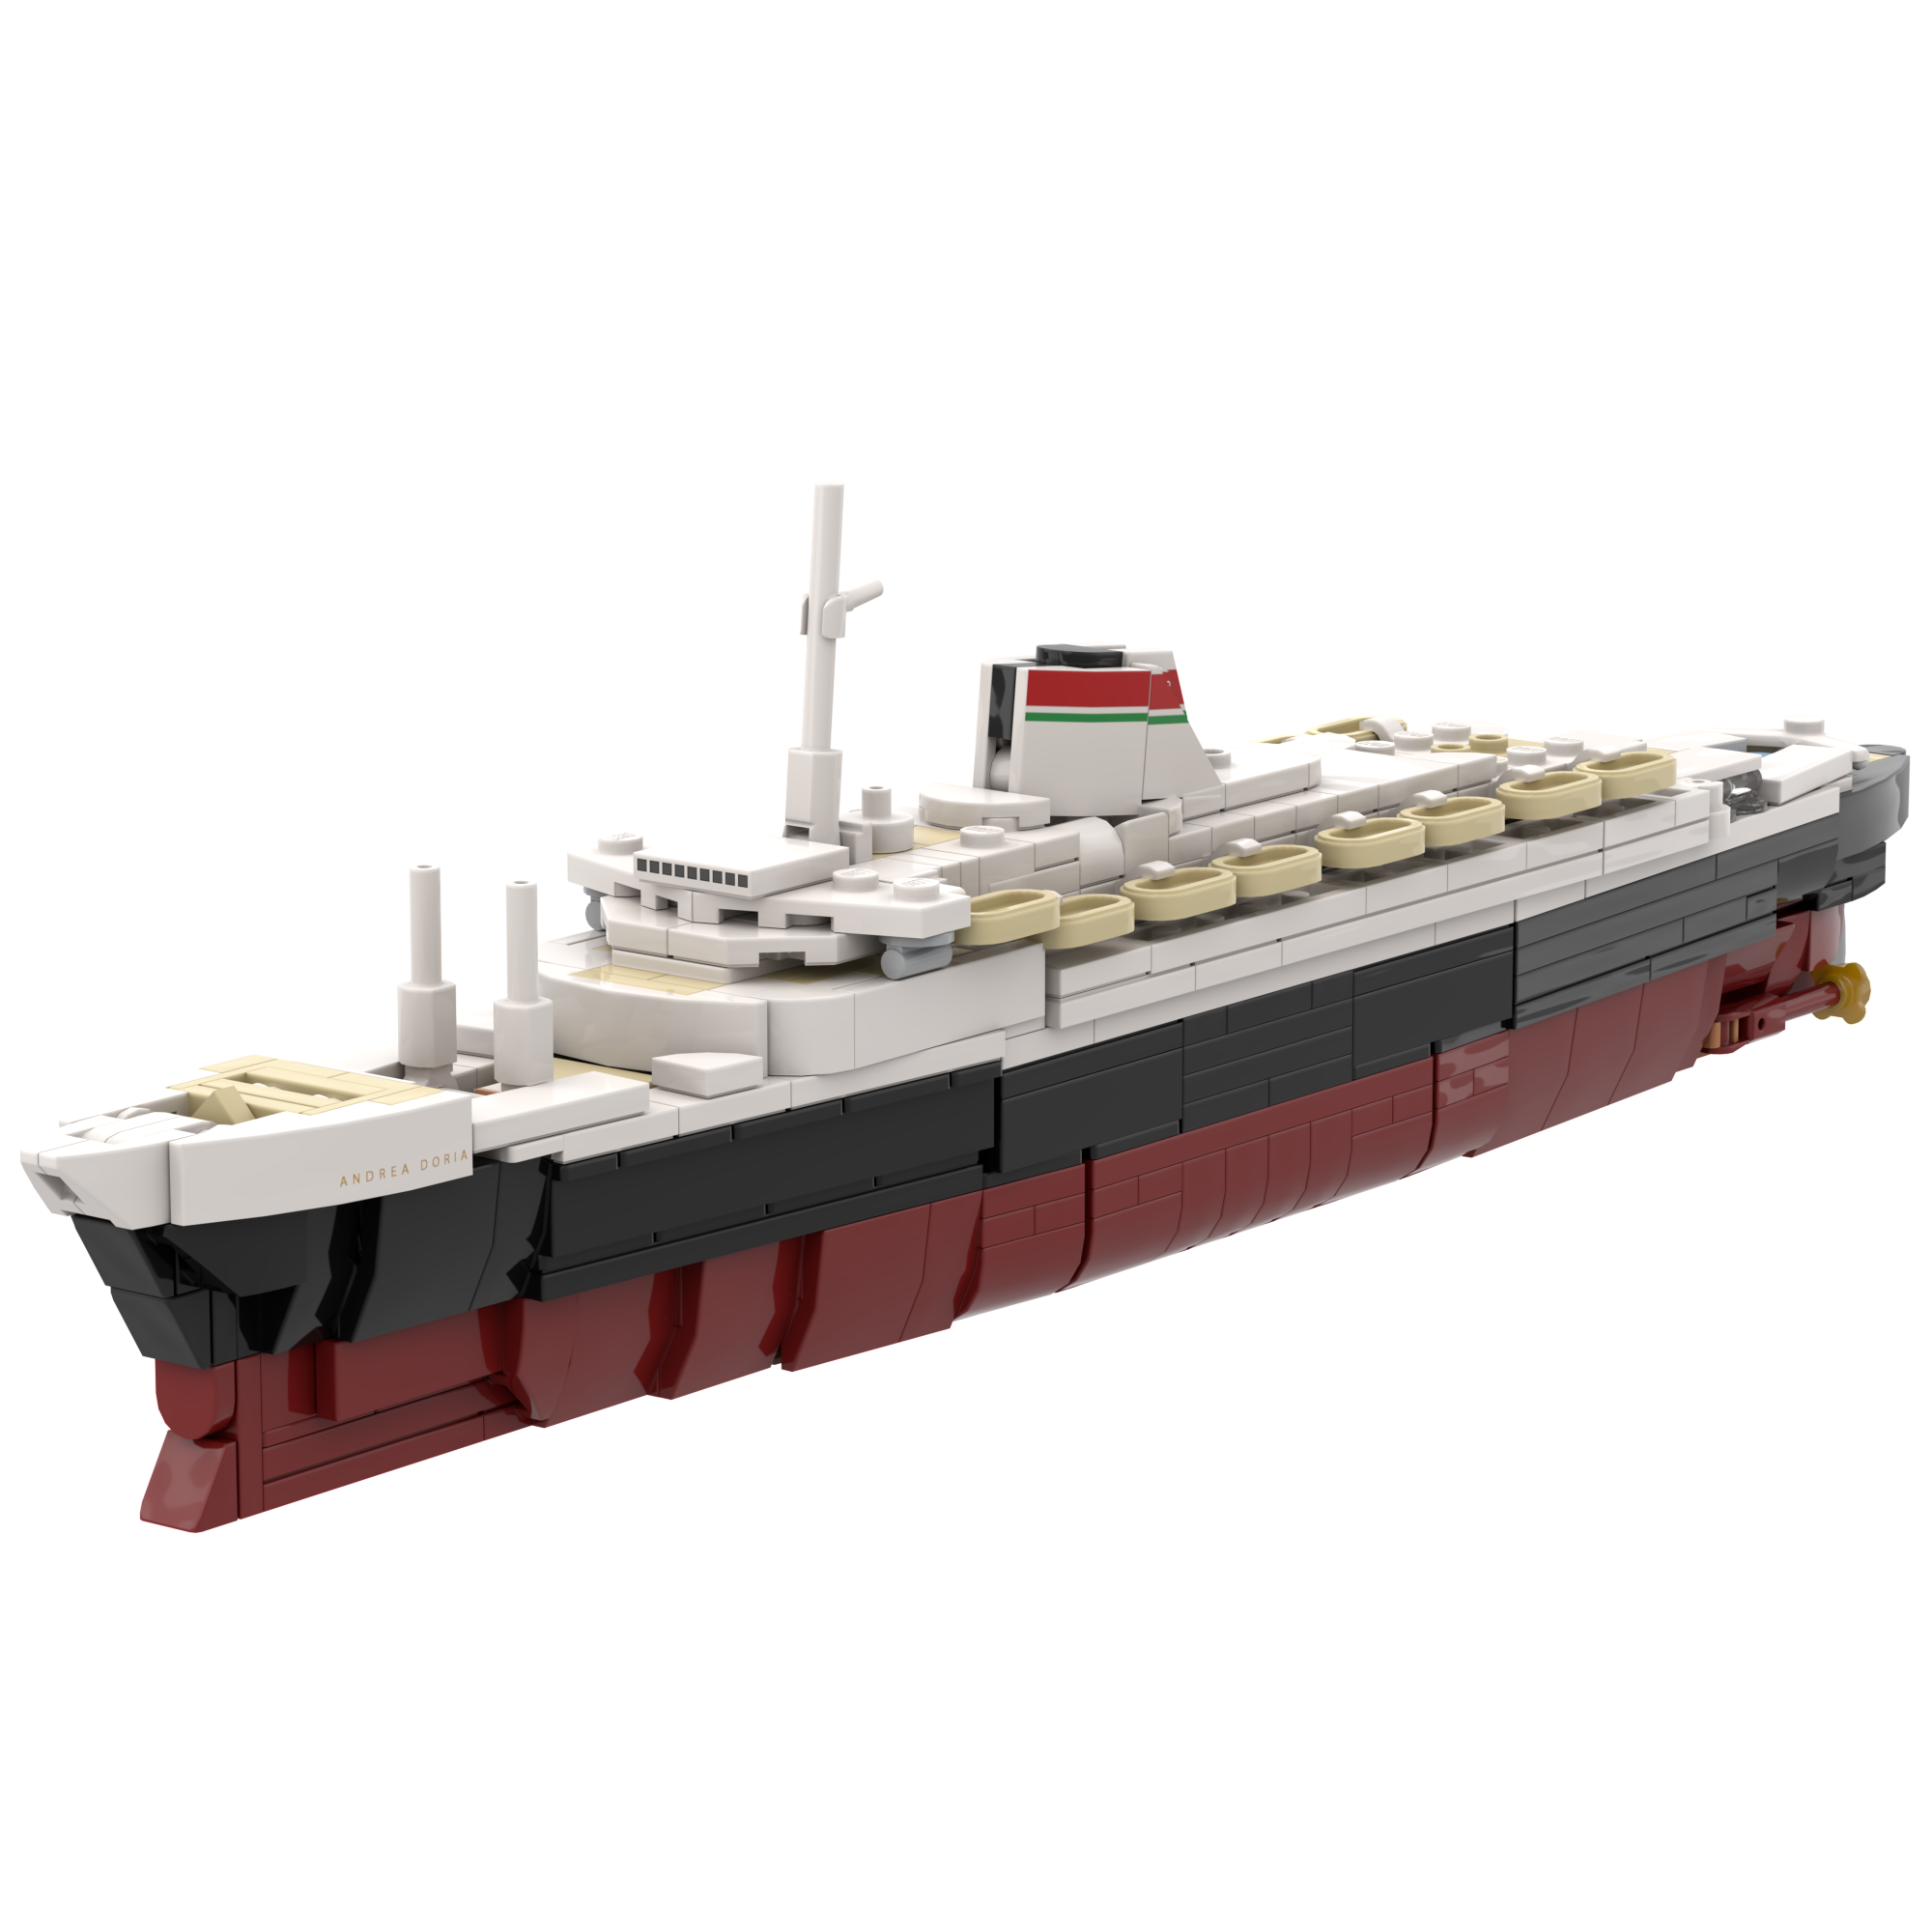 SS Andrea Doria